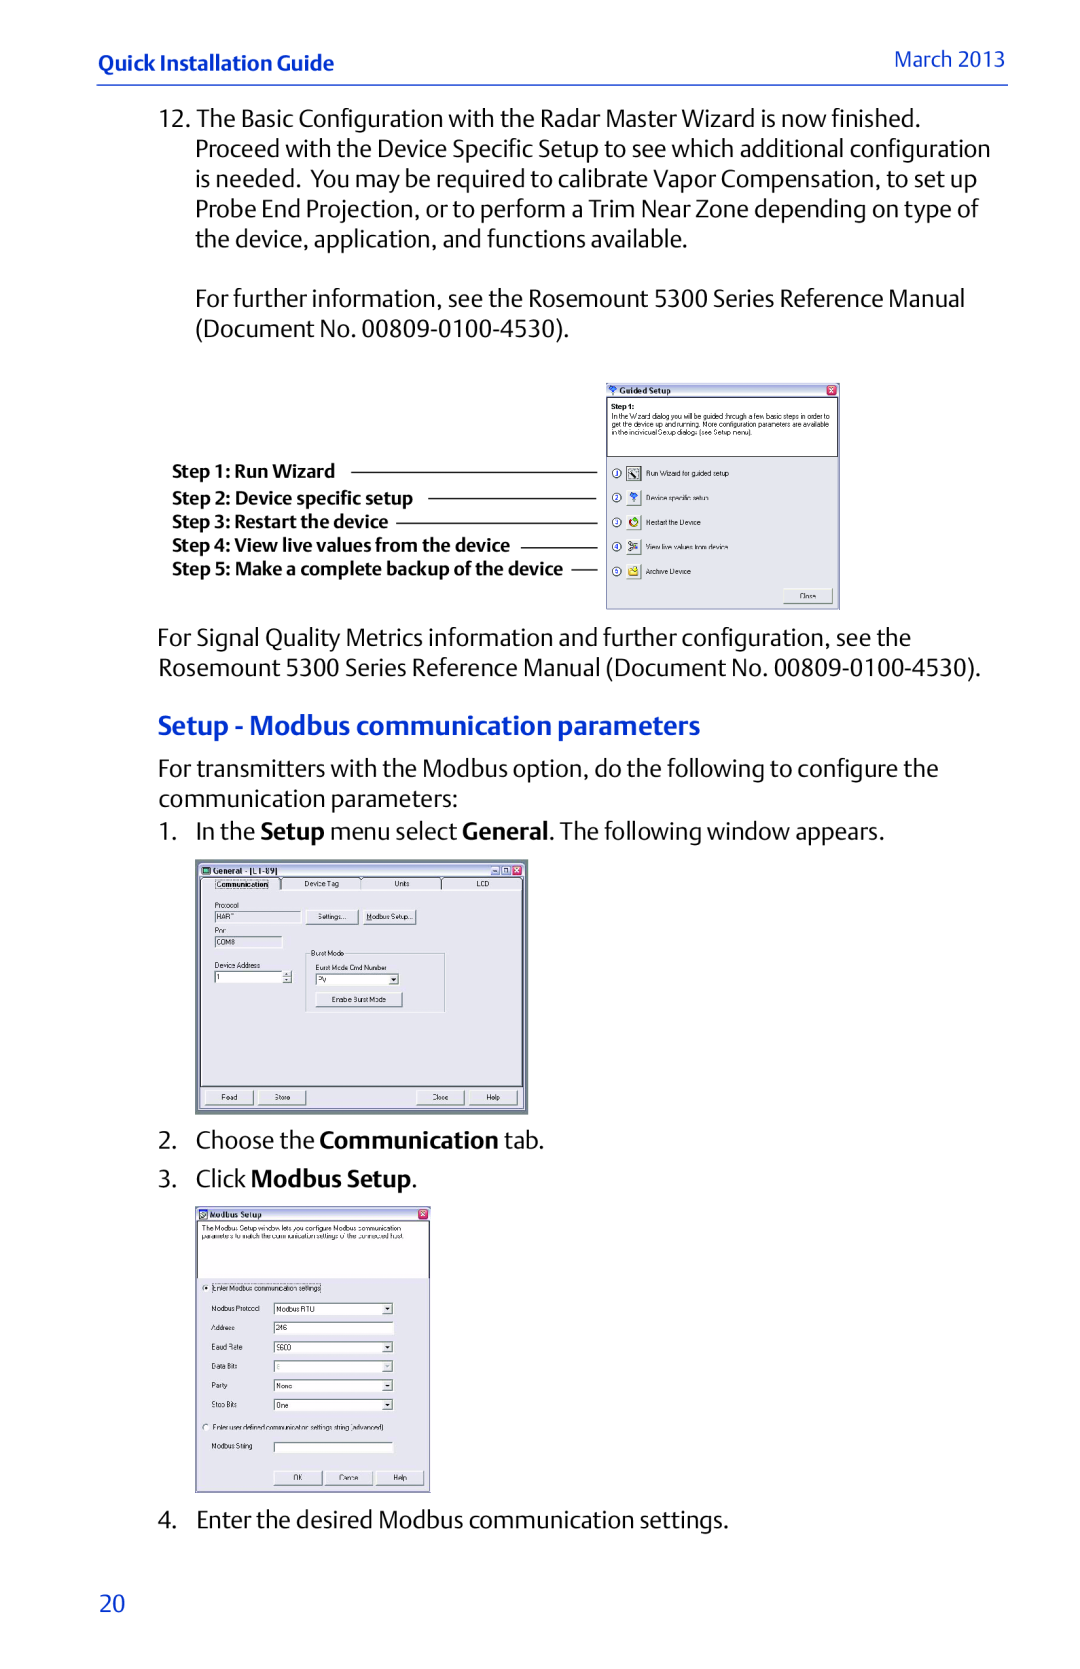 Emerson 00825-0100-4530 Rev EC manual Setup - Modbus communication parameters, Click Modbus Setup 